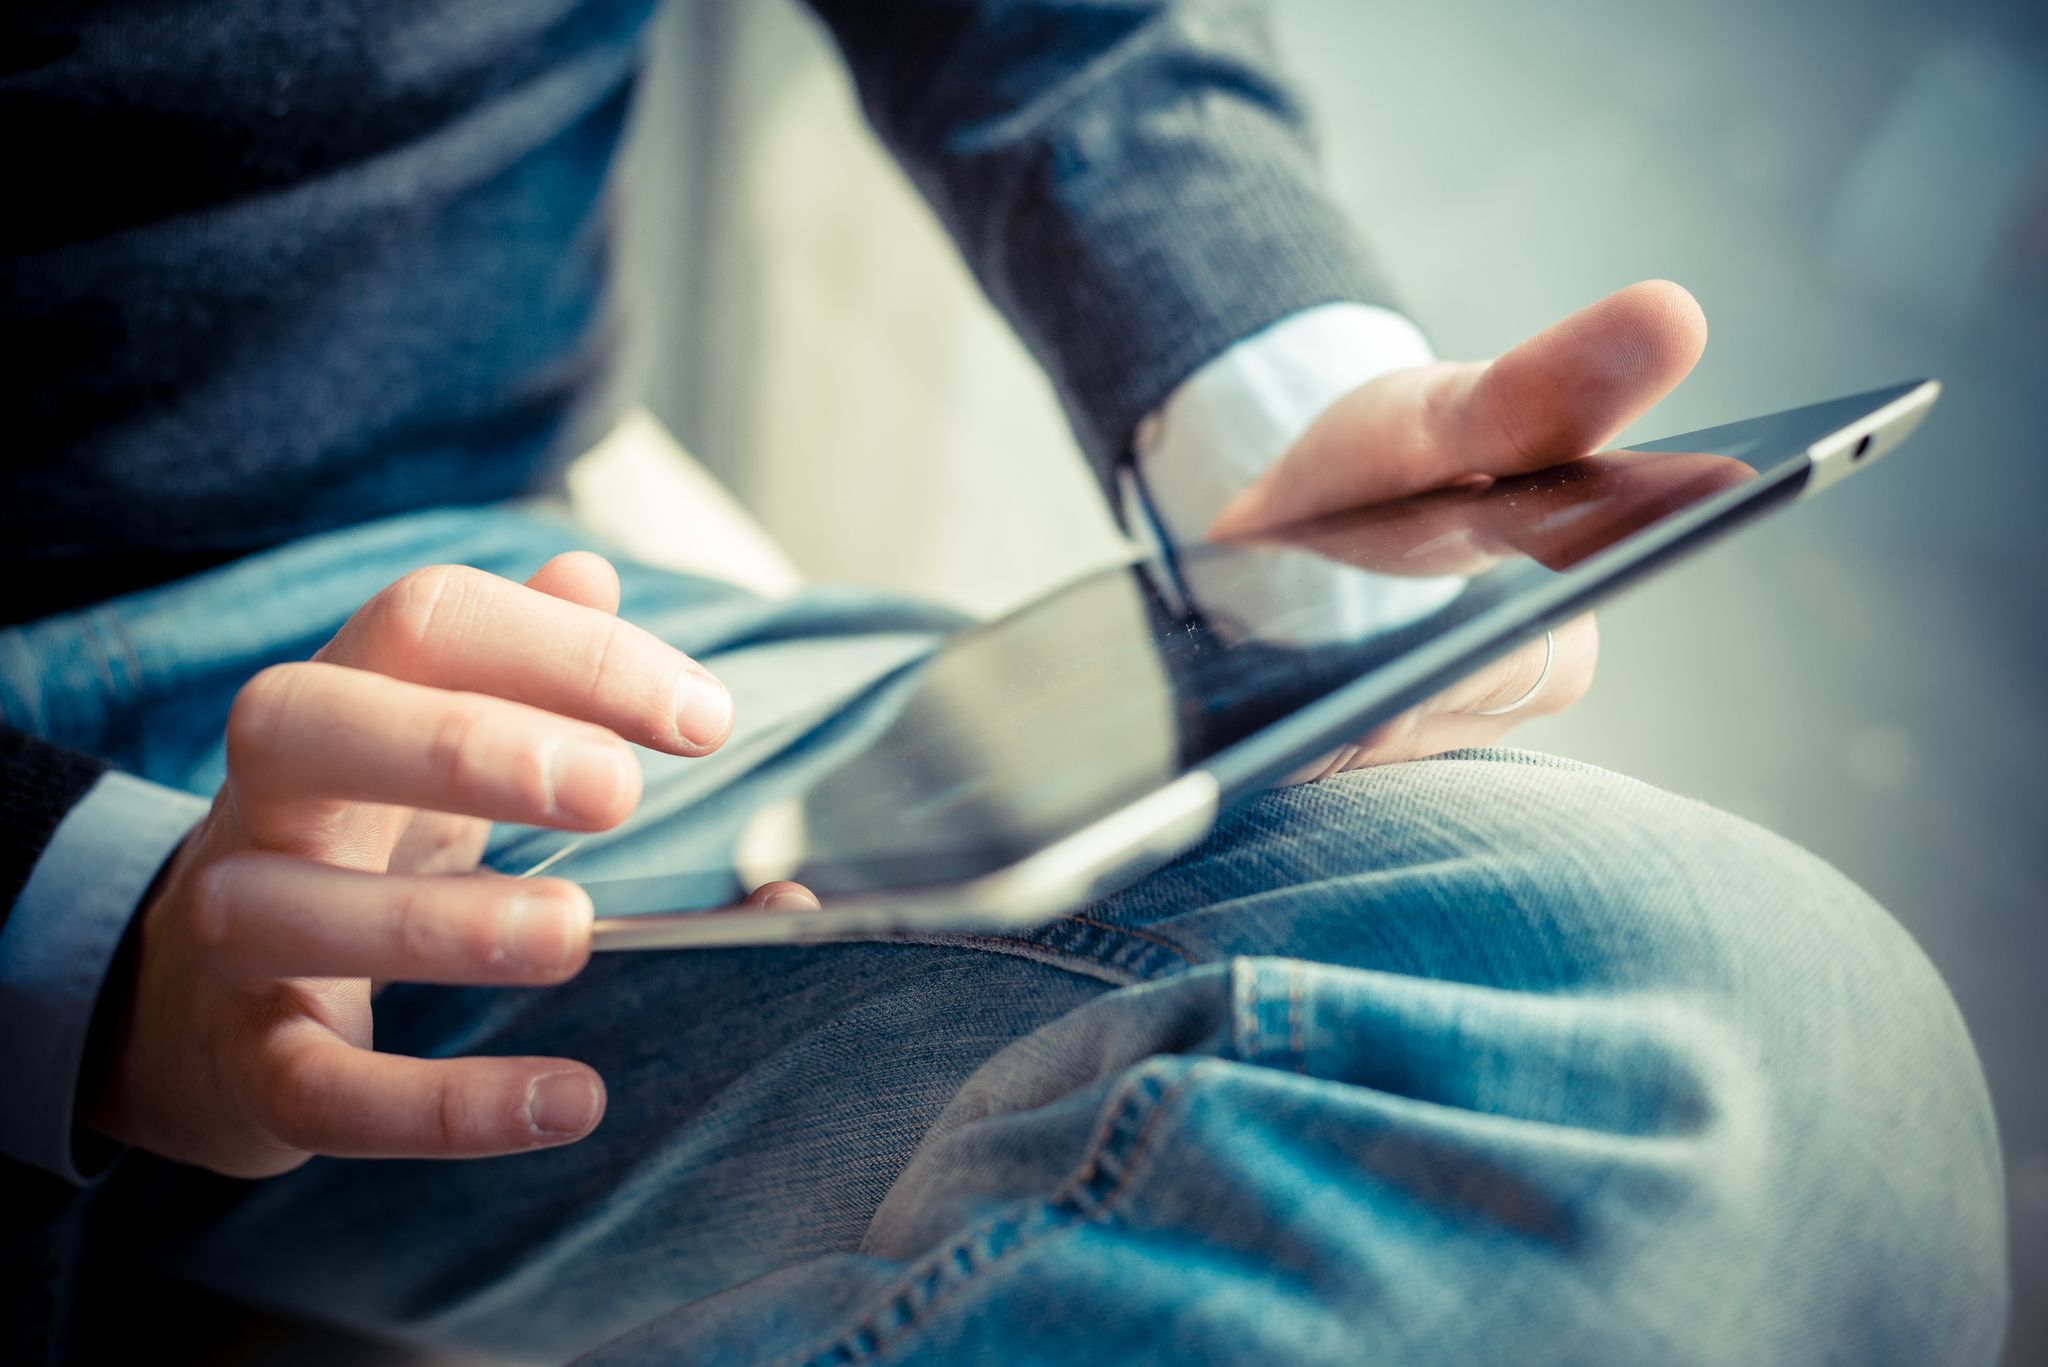 Une personne utilisant une tablette. | Source : Shutterstock